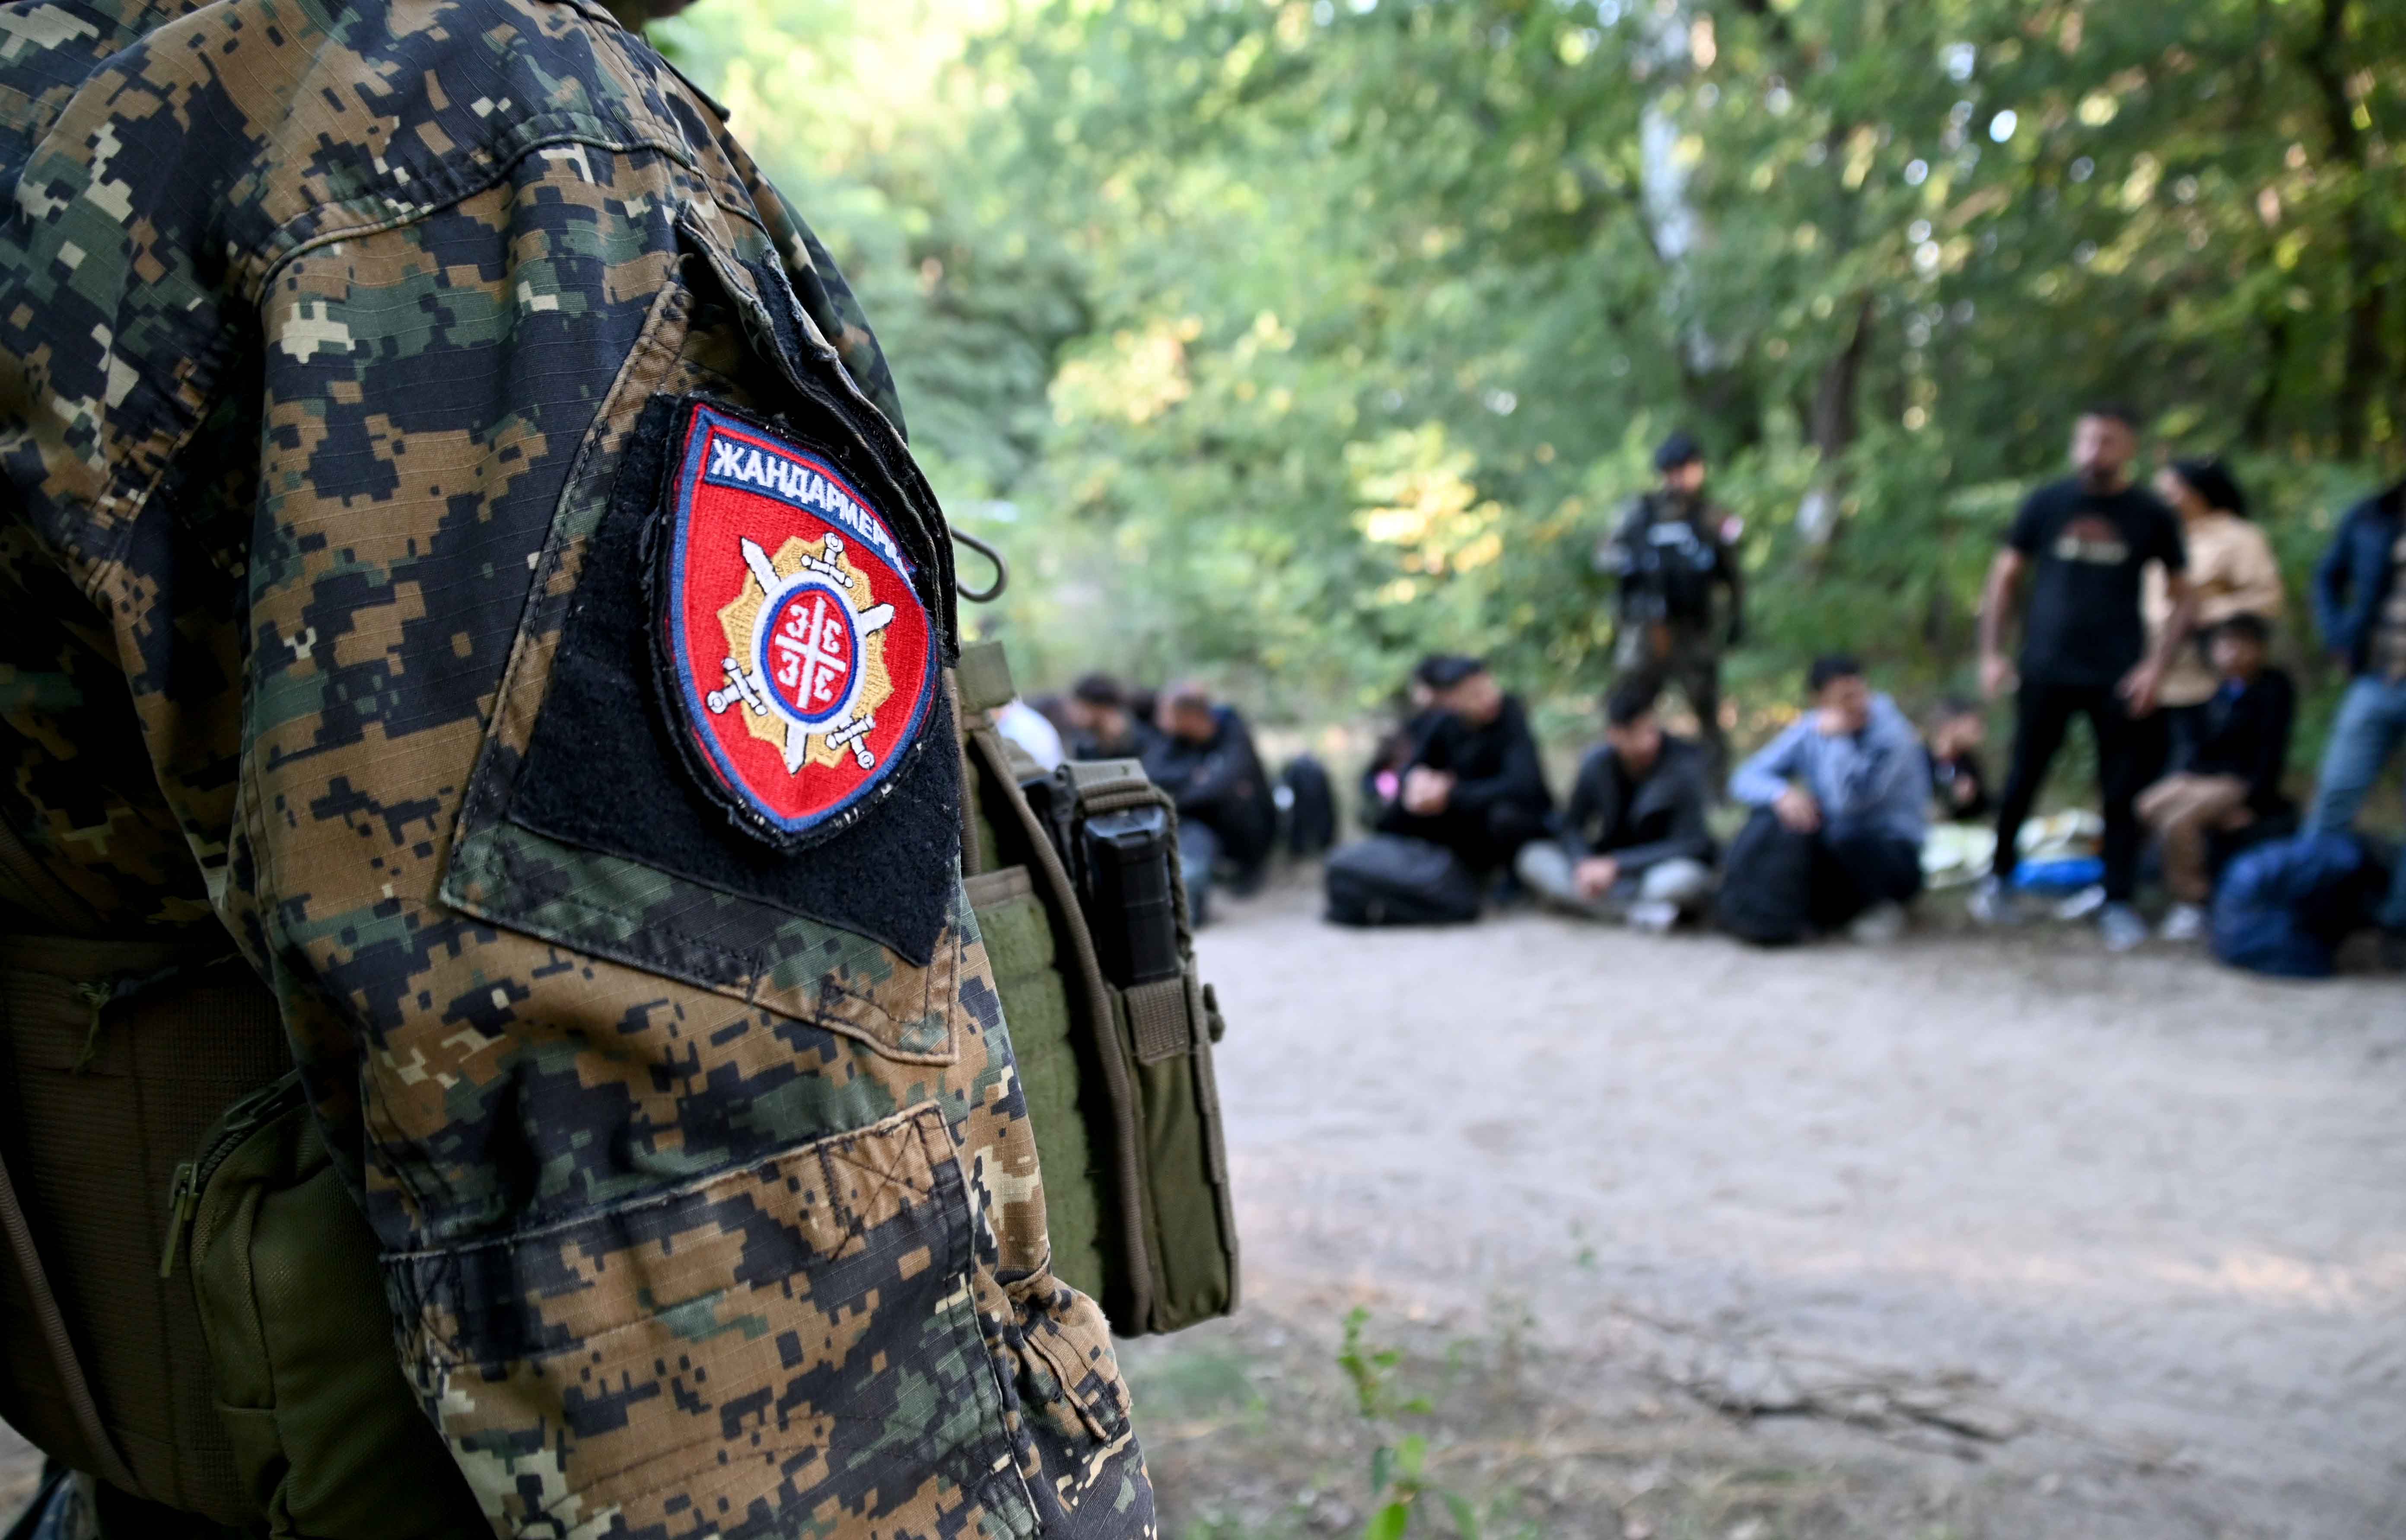 Припадници МУП-а на подручју Суботице, Сомбора и Кикинде  пронашли 371 ирегуларног мигранта, оружје, агрегате и документа